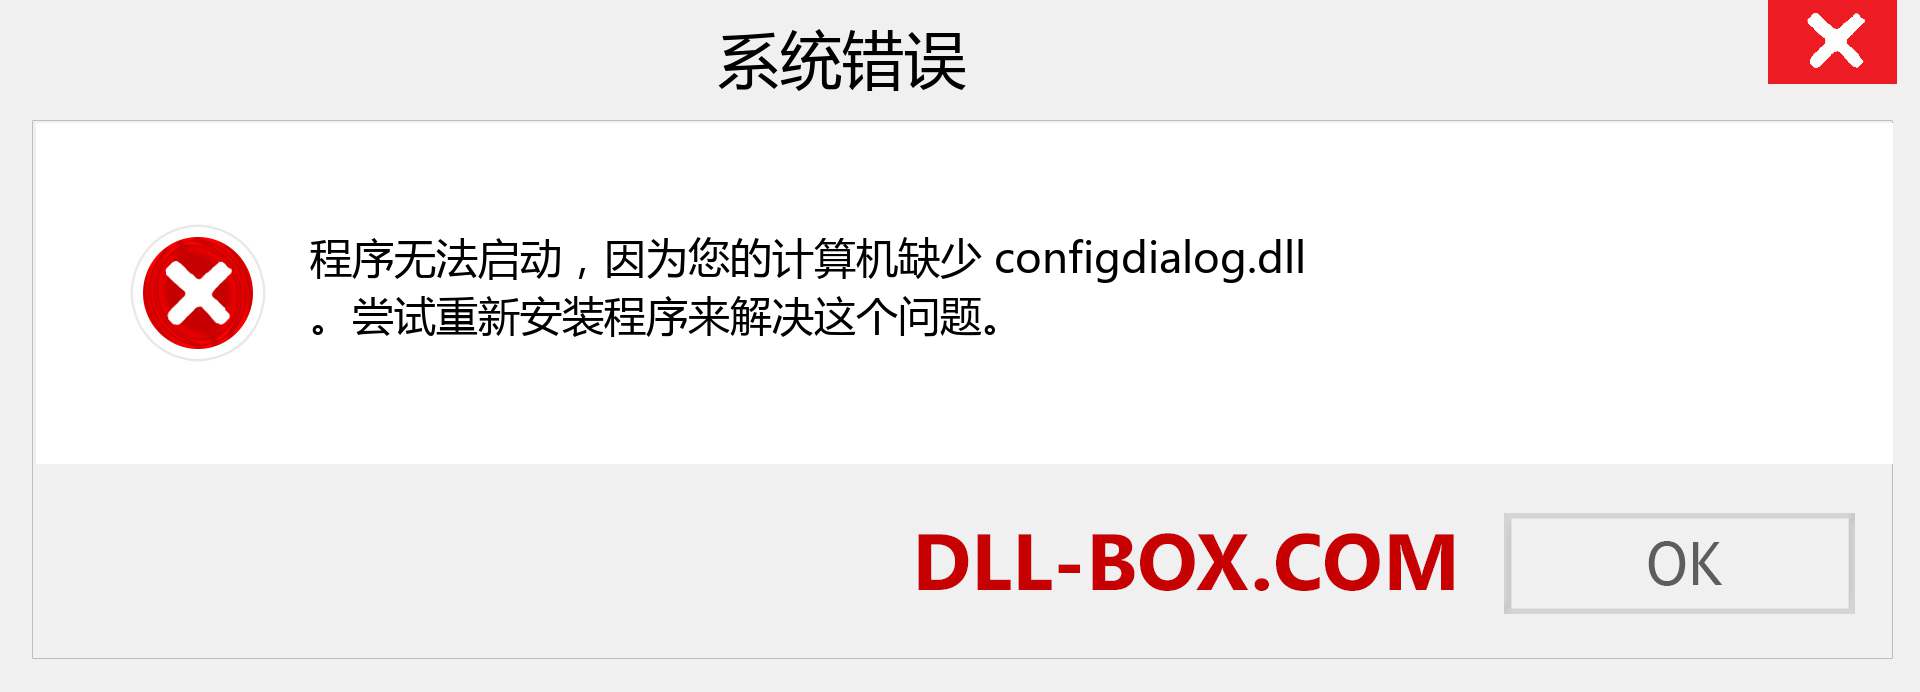 configdialog.dll 文件丢失？。 适用于 Windows 7、8、10 的下载 - 修复 Windows、照片、图像上的 configdialog dll 丢失错误